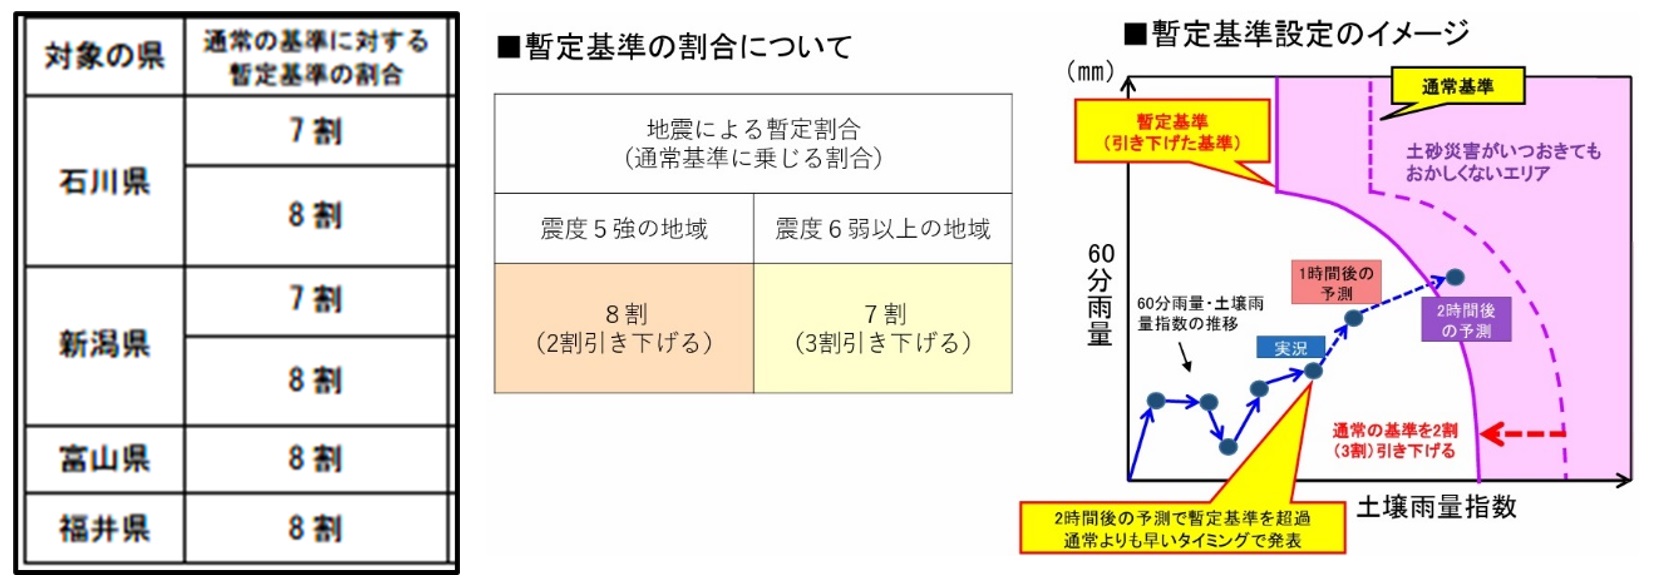 圖十二、緊急調降降雨量警戒標準(資料來源：日本國土交通省)